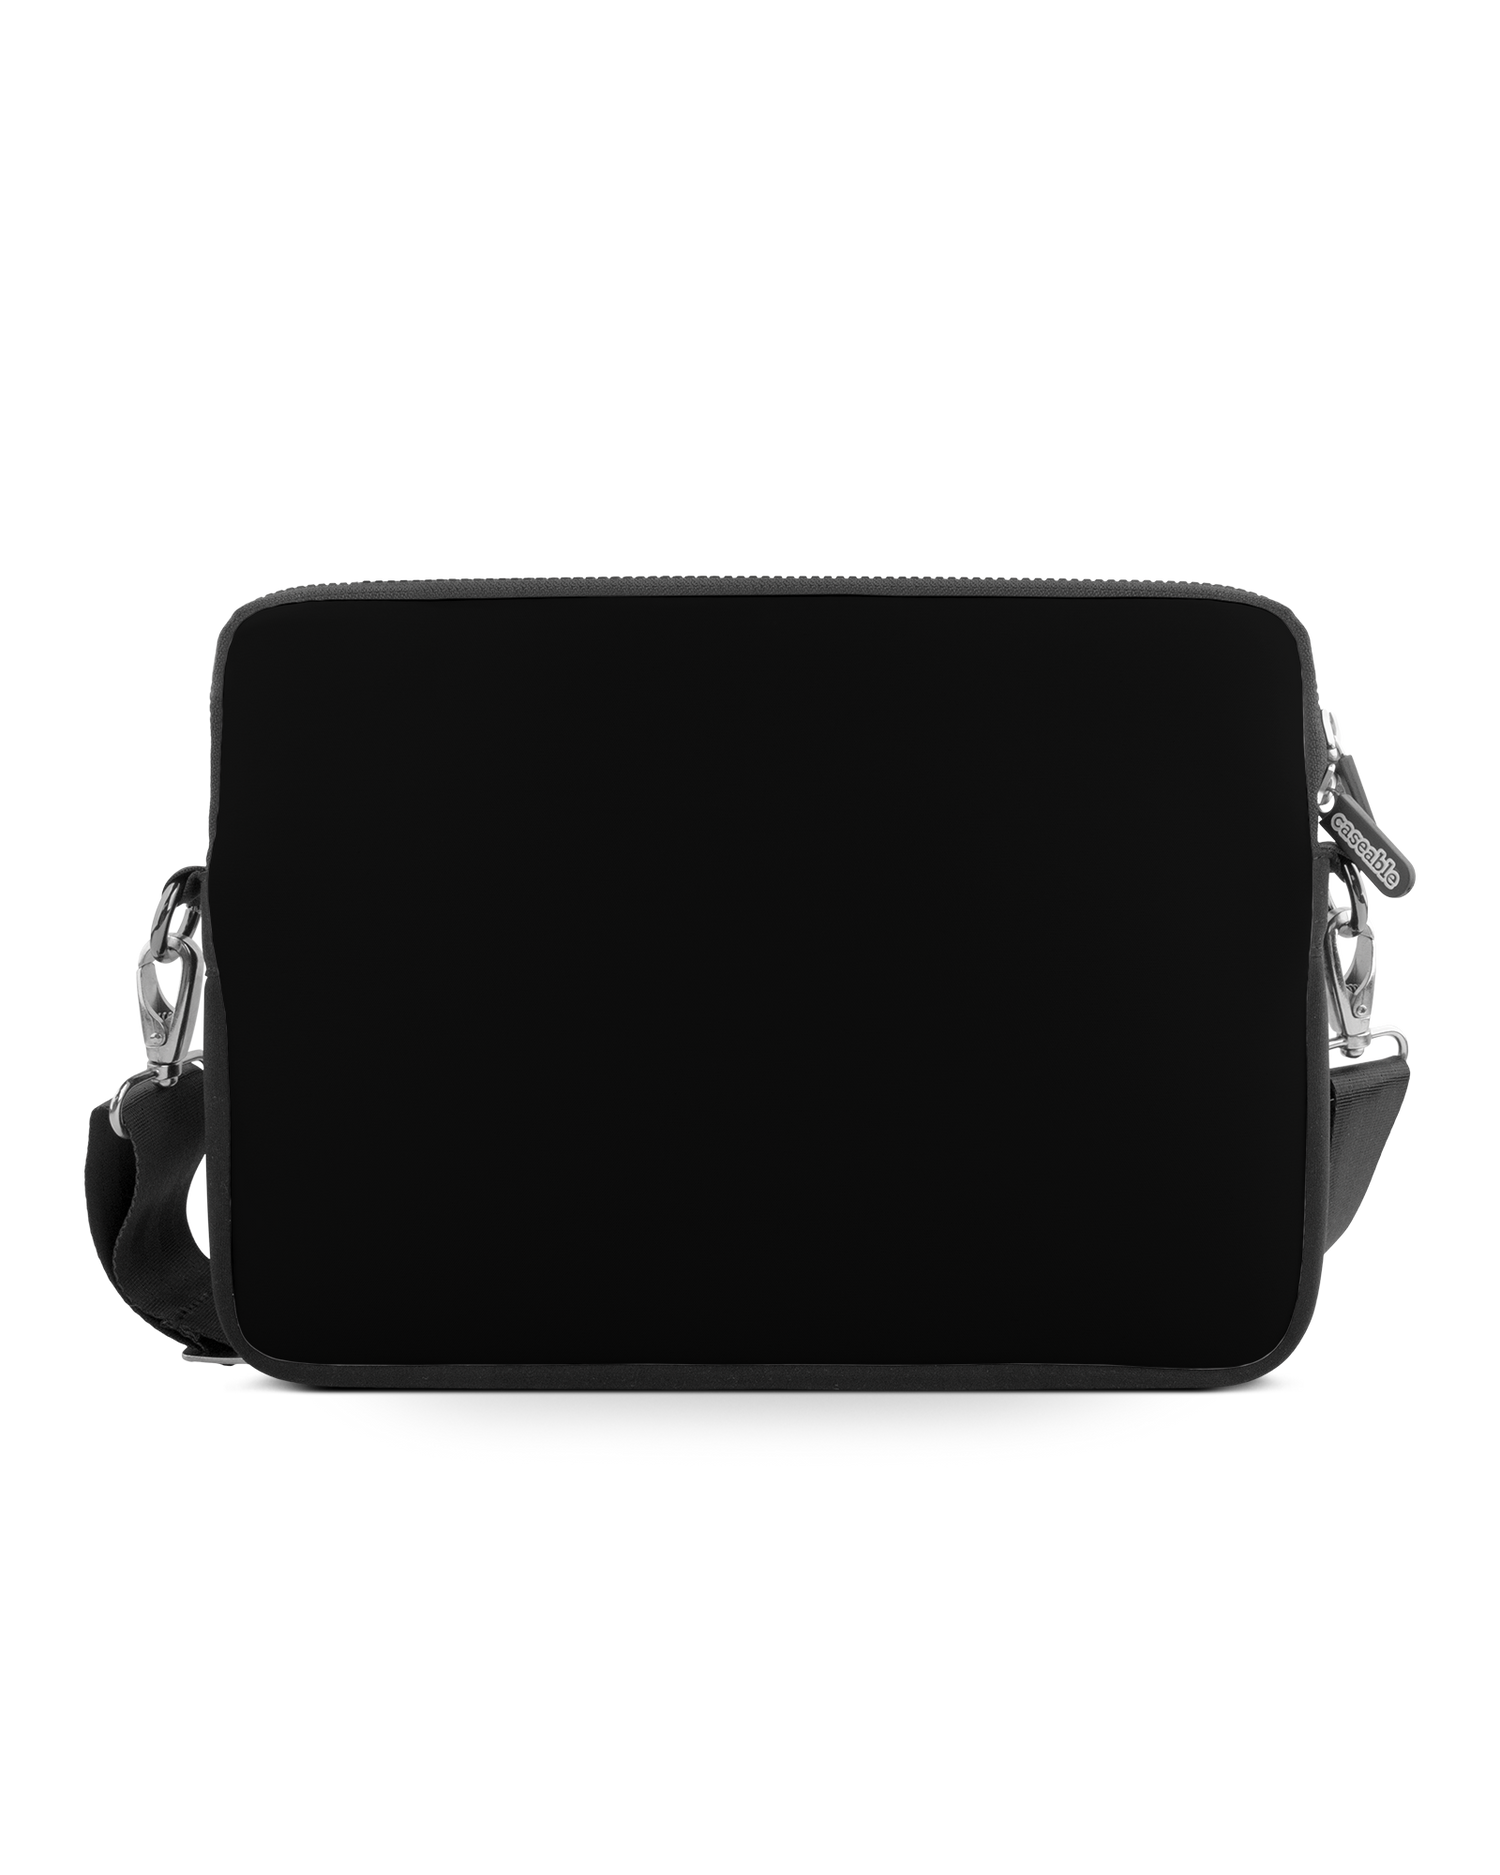 BLACK Premium Laptoptasche 13 Zoll: Vorderansicht